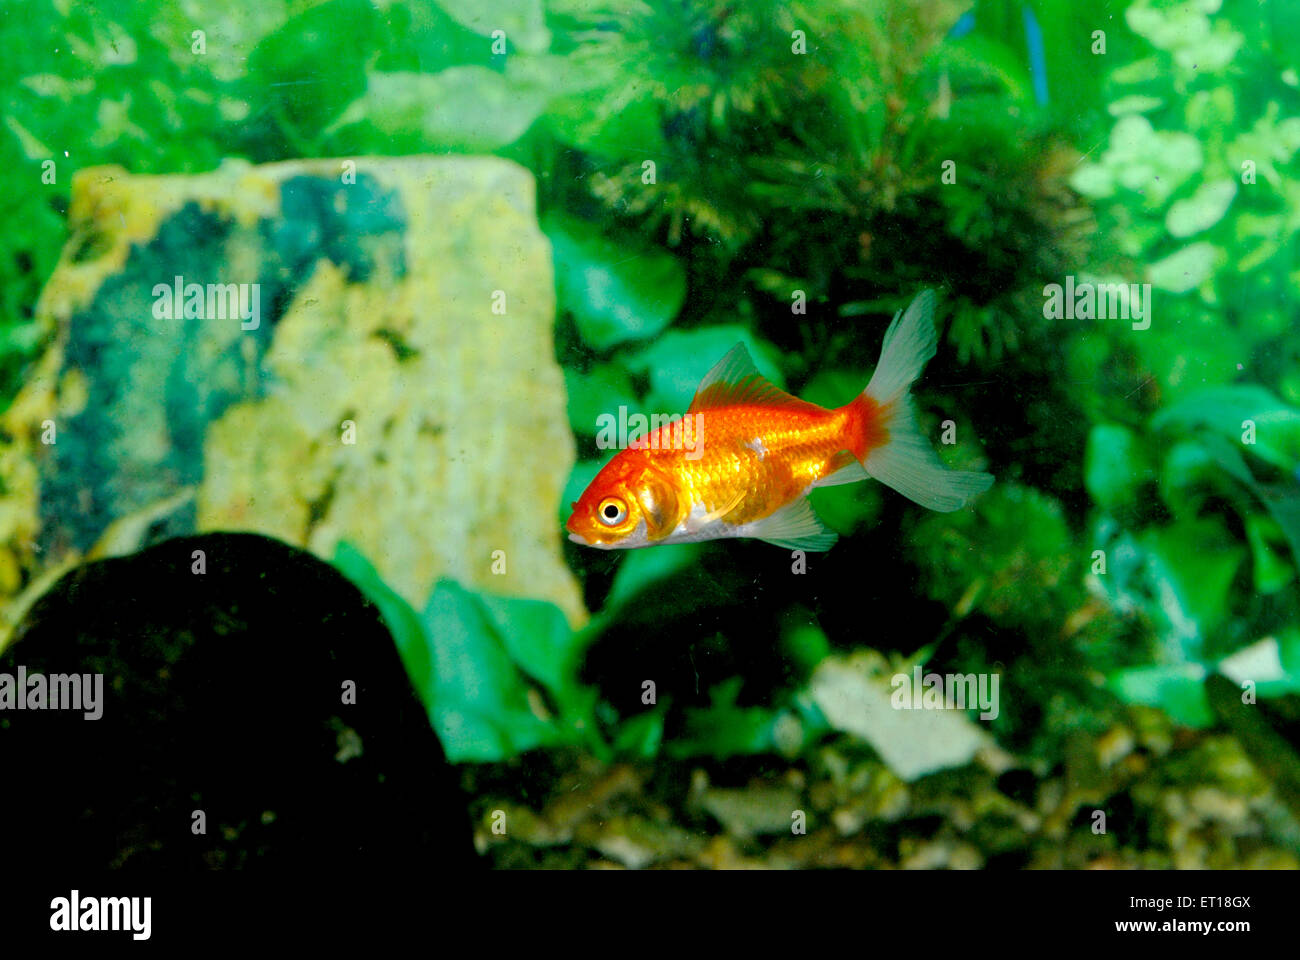 Goldfish, Carassius auratus, in aquarium Stock Photo